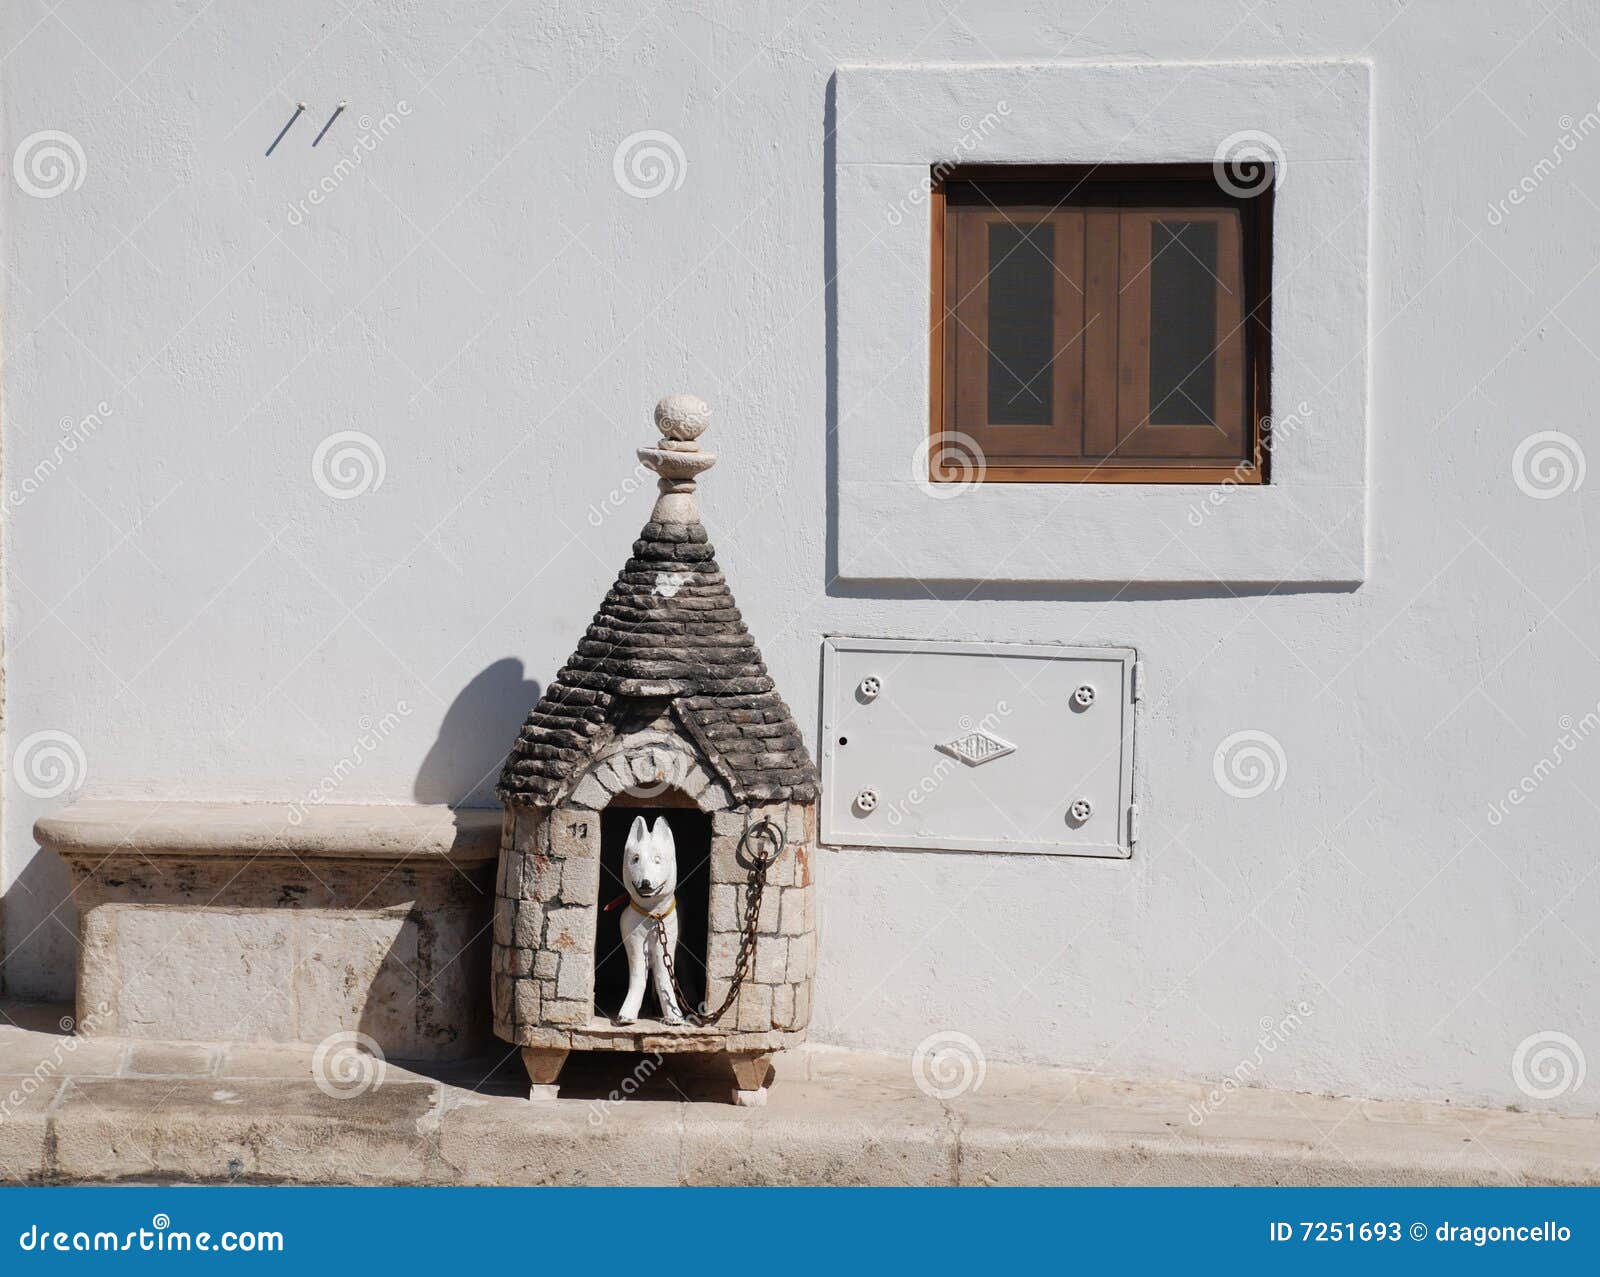 De Hut van de Hond van Trullo. Beweer hondhut buiten een traditionele trullihuizen in Alberobello in Puglia, zuidelijk Italië. Trulli, wat in het kader van de wetten van de Erfenis van de Wereld van Unesco beschermd zijn, is traditionele kalksteenhuizen met overkoepelde of kegeldaken, en is gemeenschappelijk in het gebied Alberobello